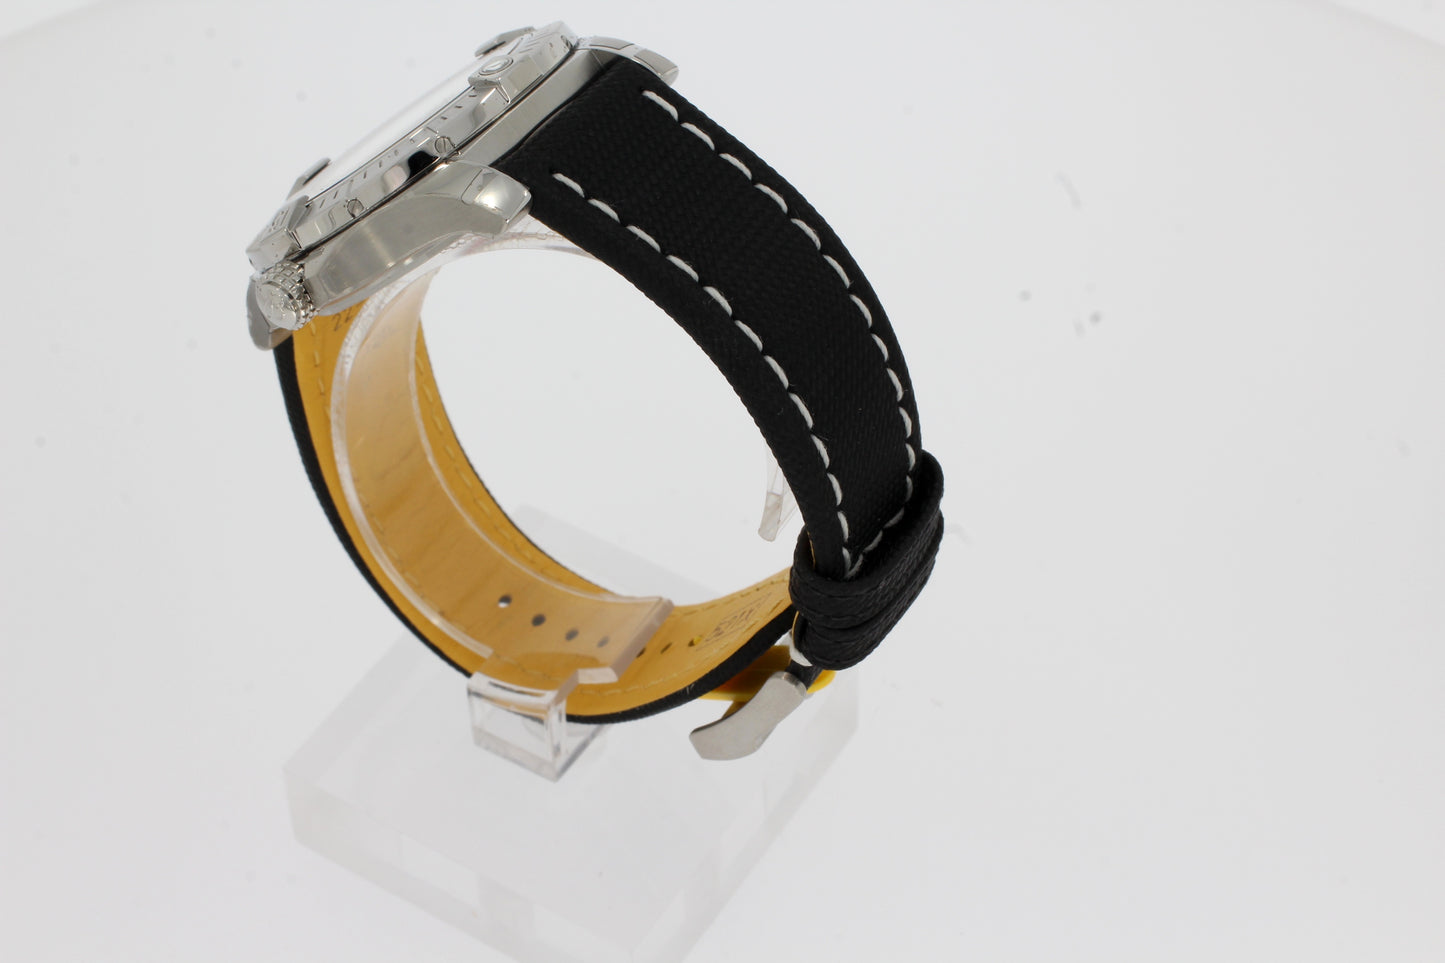 Breitling AVENGER AUTOMATIC Herren Uhr 43mm Edelstahl - Schwarz  A17318101B1X1